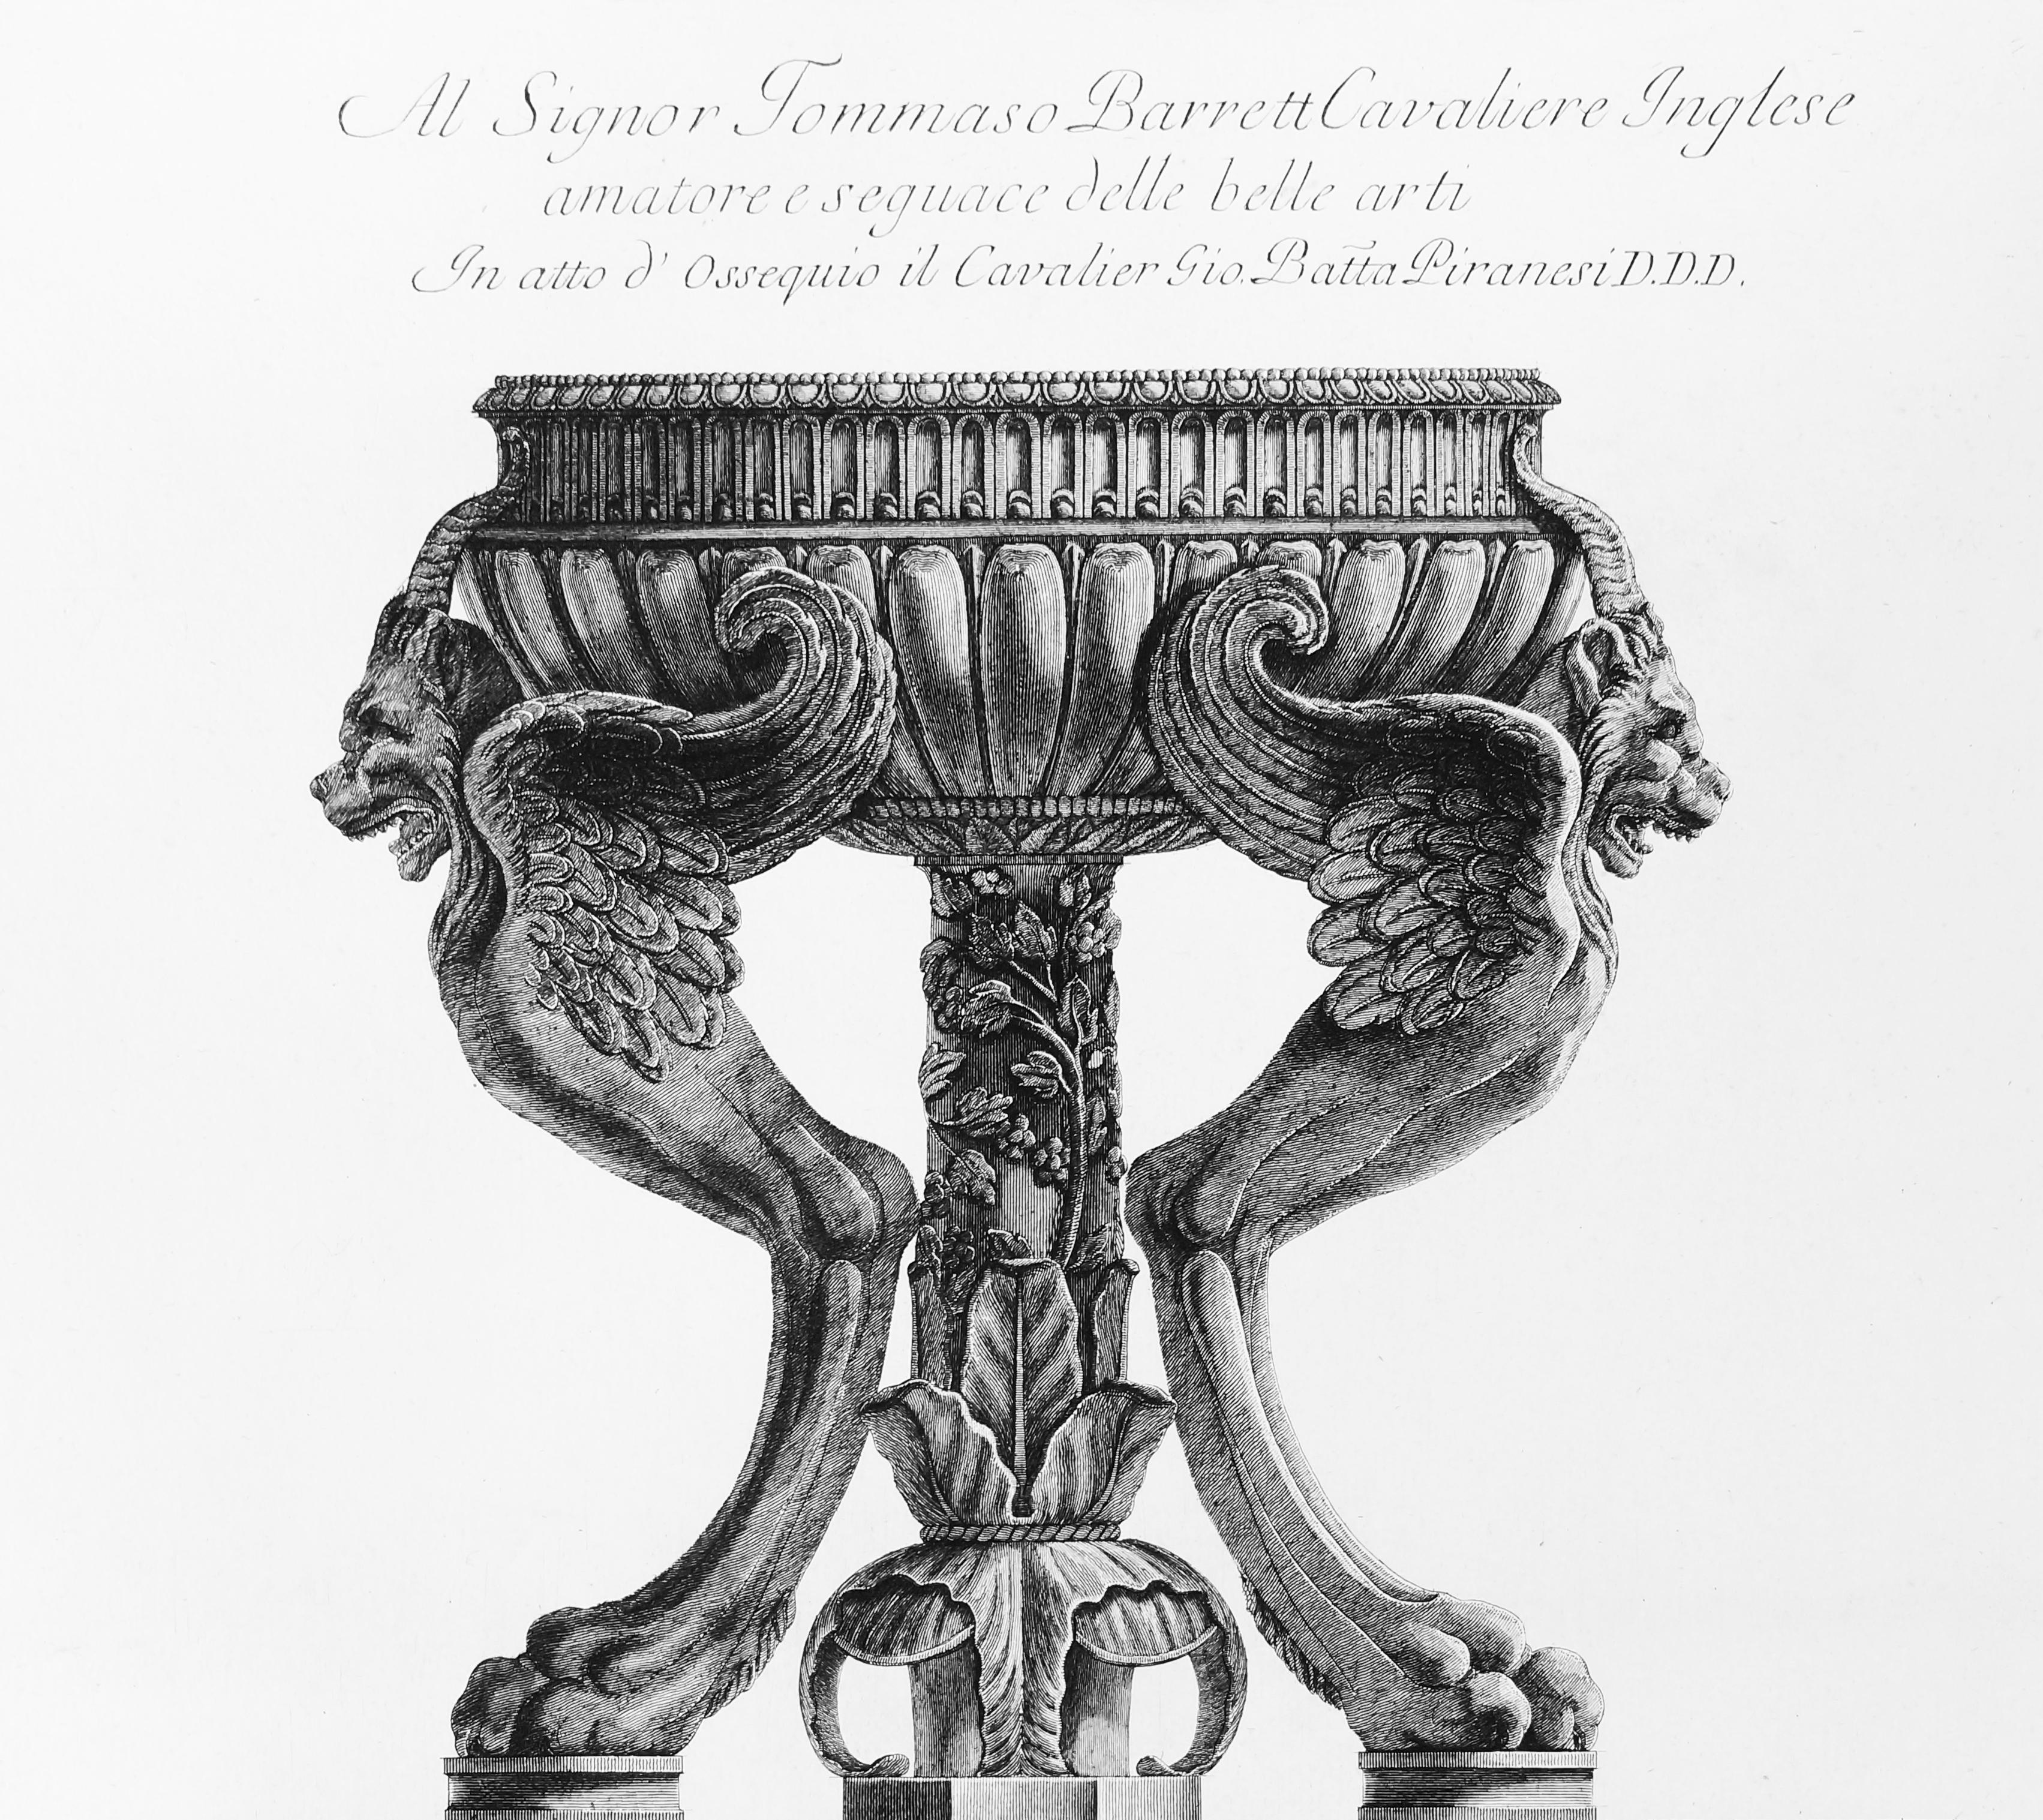 Altare antico di marmo ritrovato fra le macerie della Villa Adriana  - 1778 - Print by Giovanni Battista Piranesi